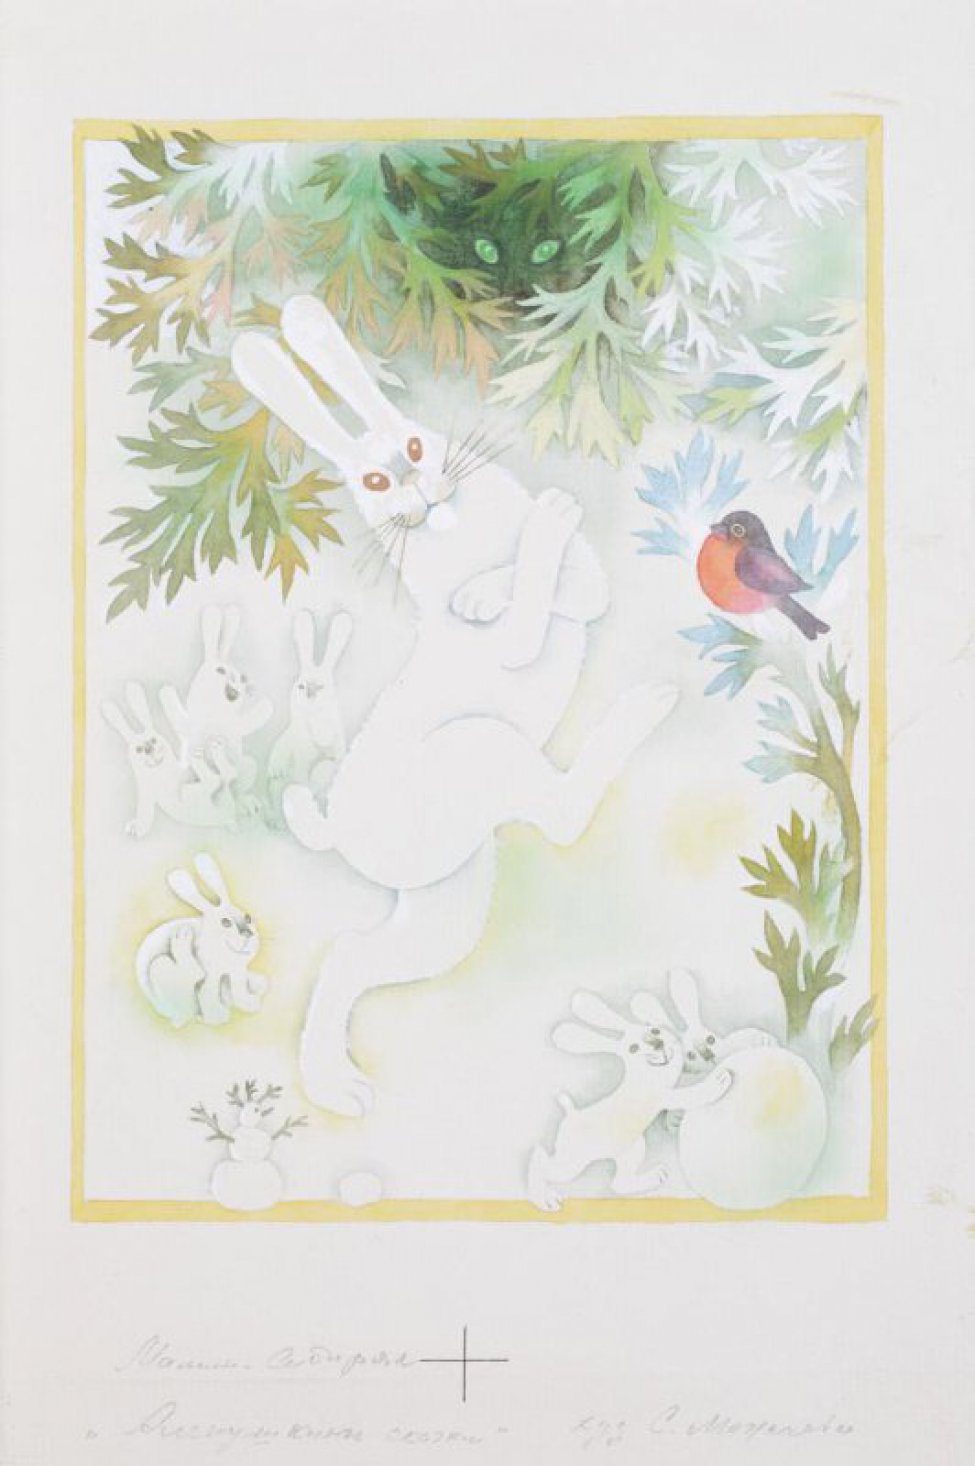 В центре композиции стилизованное изображение белого зайца, пляшущего на одной лапе, под заснеженными ветками ели, среди которых видна волчья морда с зелеными глазами. Слева изображены четыре смеющихся зайца и снеговик. Справа - два зайца, катящих снежный ком, и снегирь, сидящий на ветке.